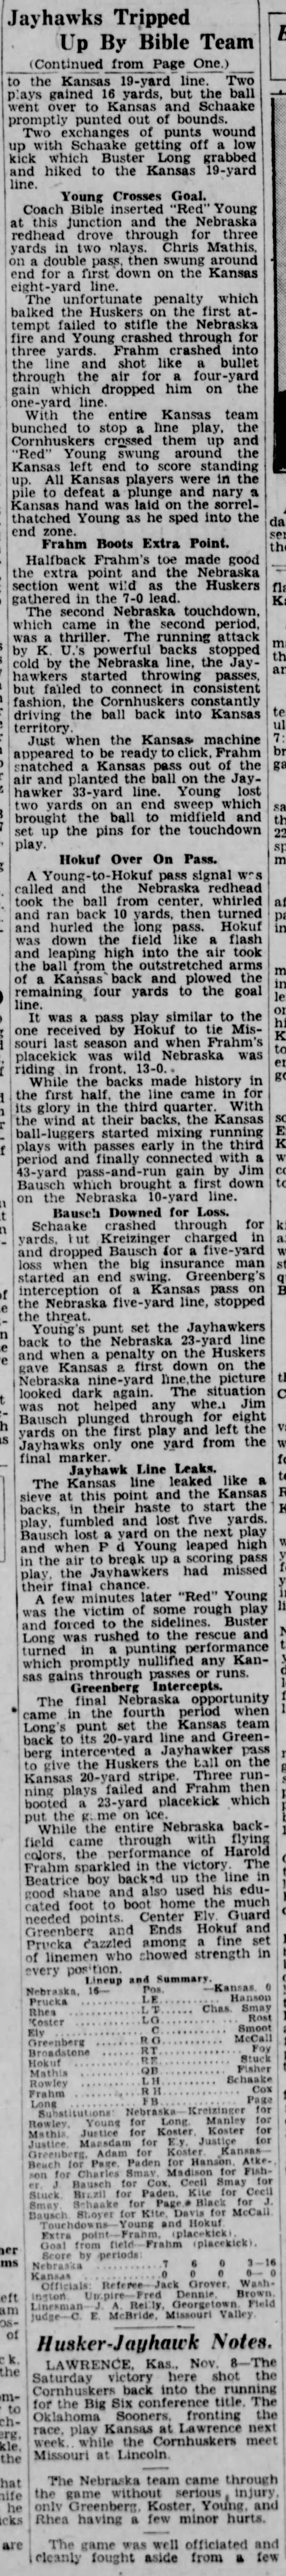 1930 Nebraska-Kansas football, part 3